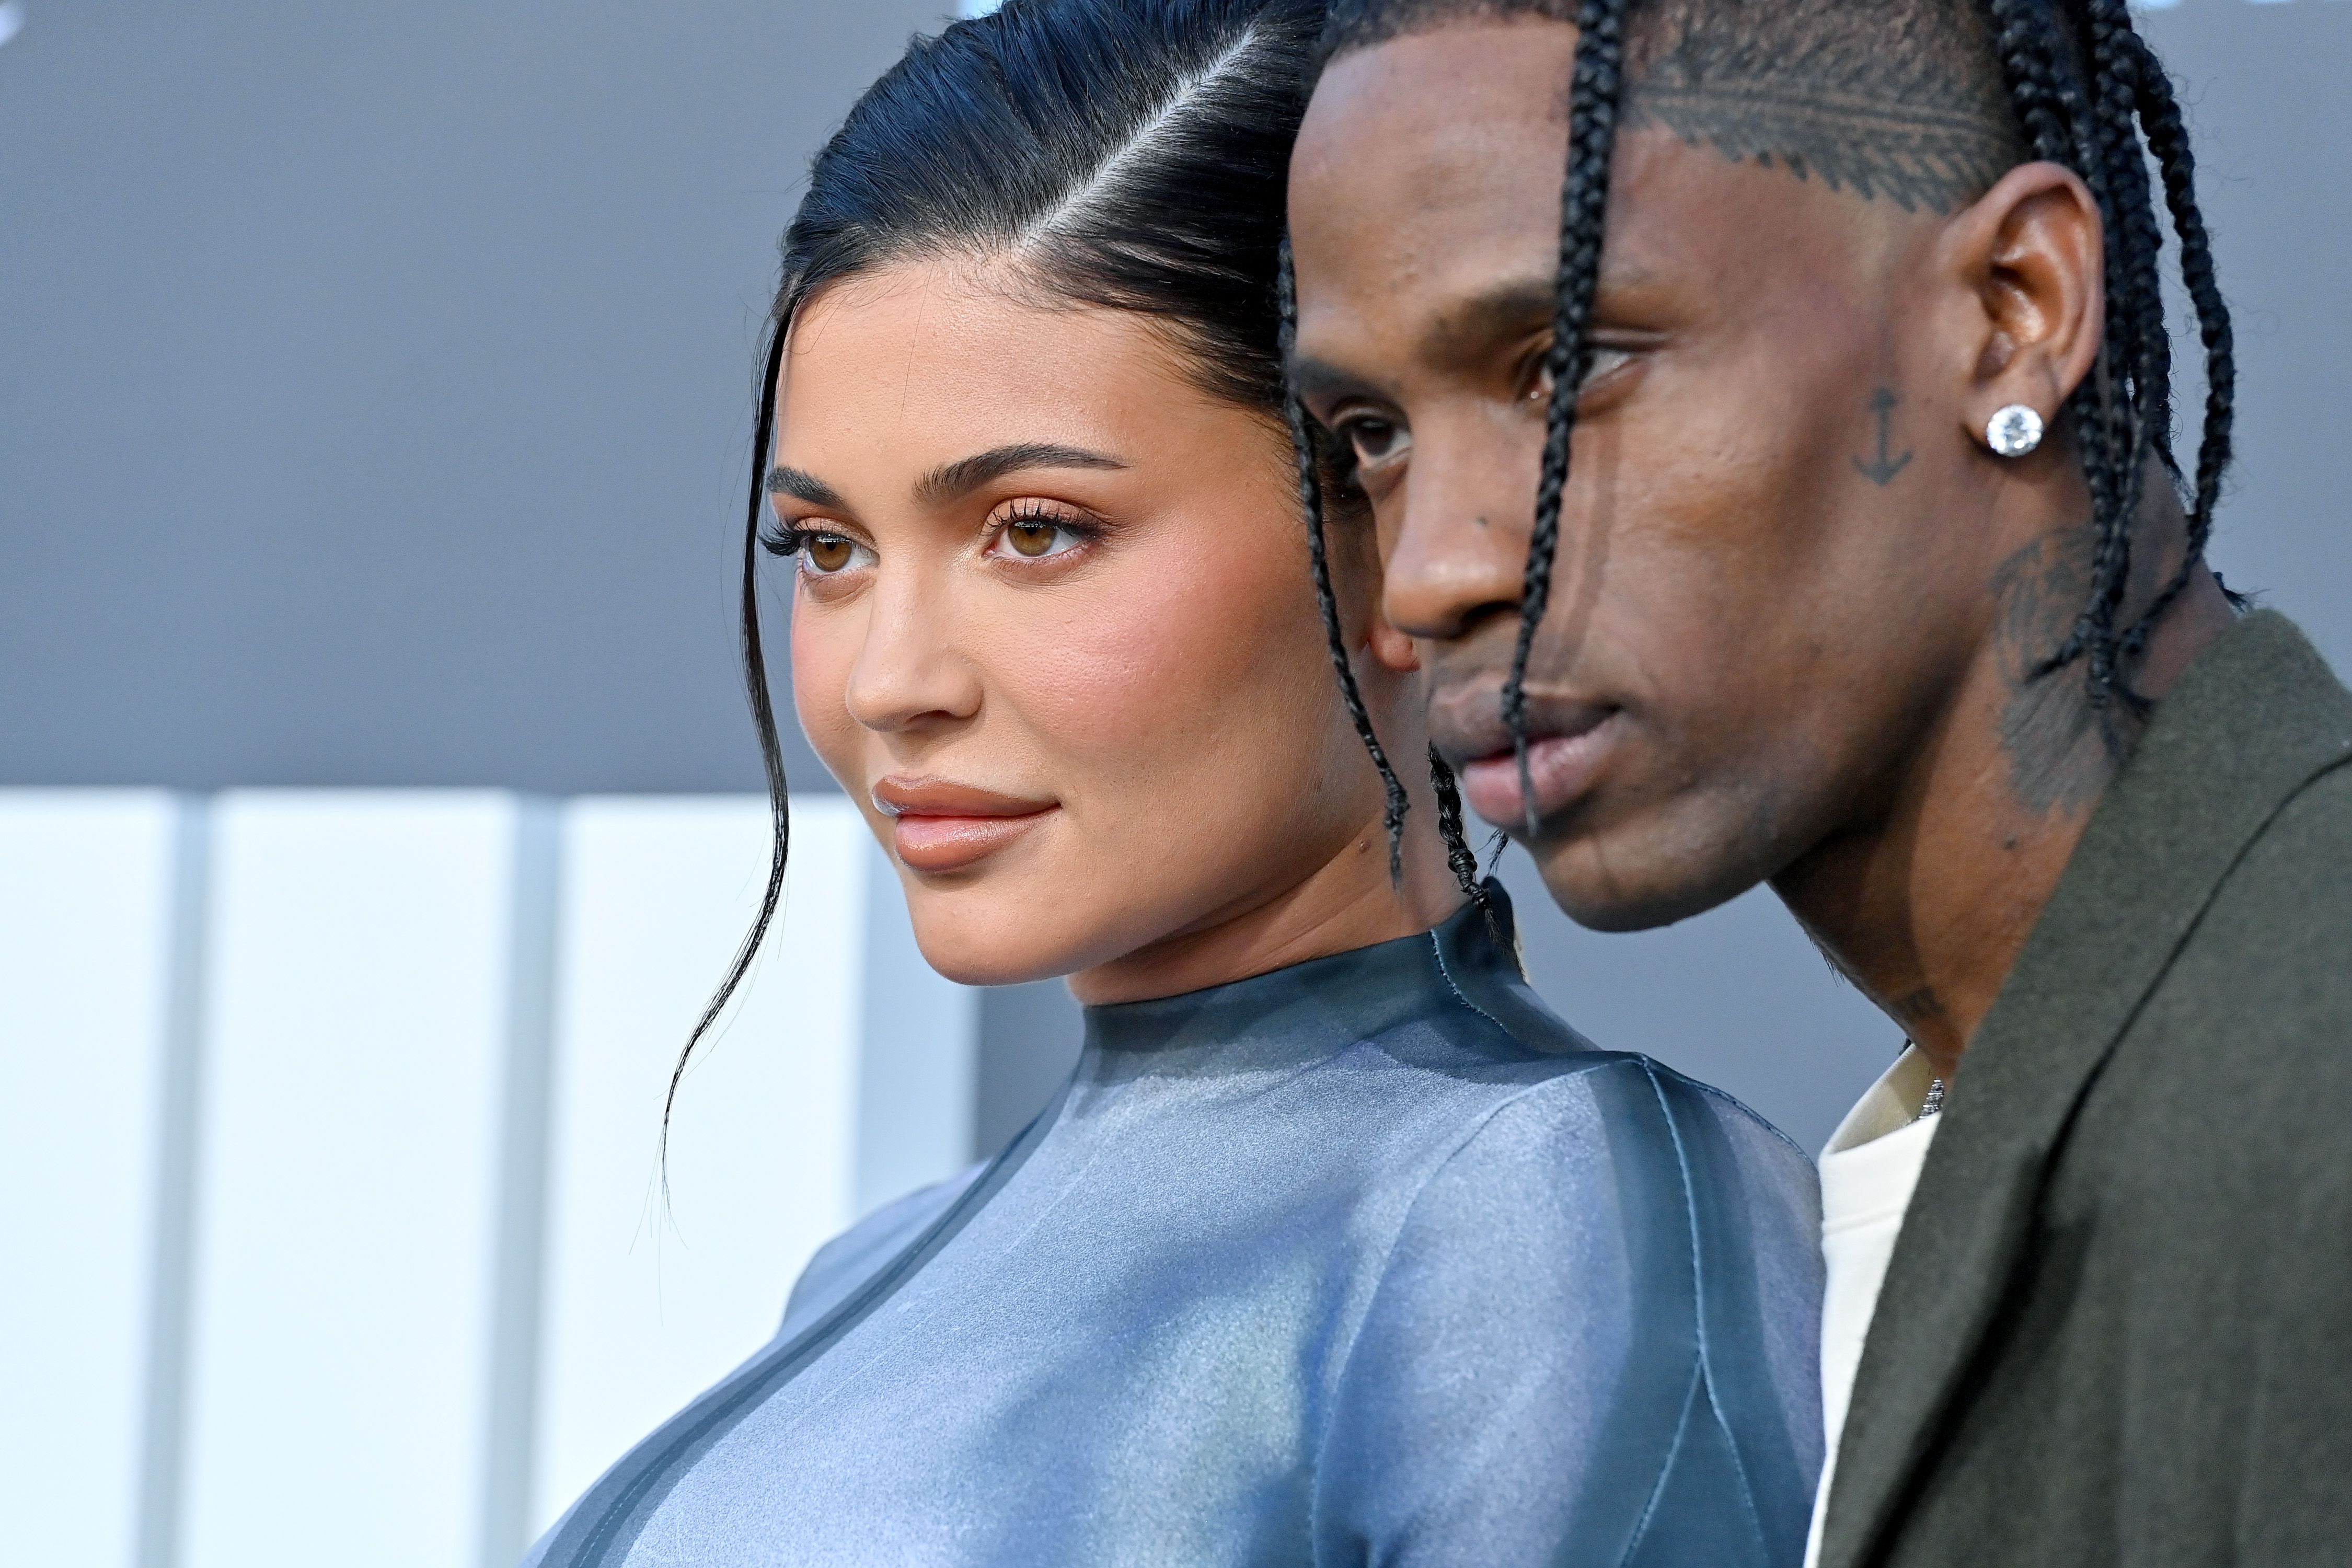 Kylie Jenner & Boyfriend Travis Scott Attend Louis Vuitton Fashion